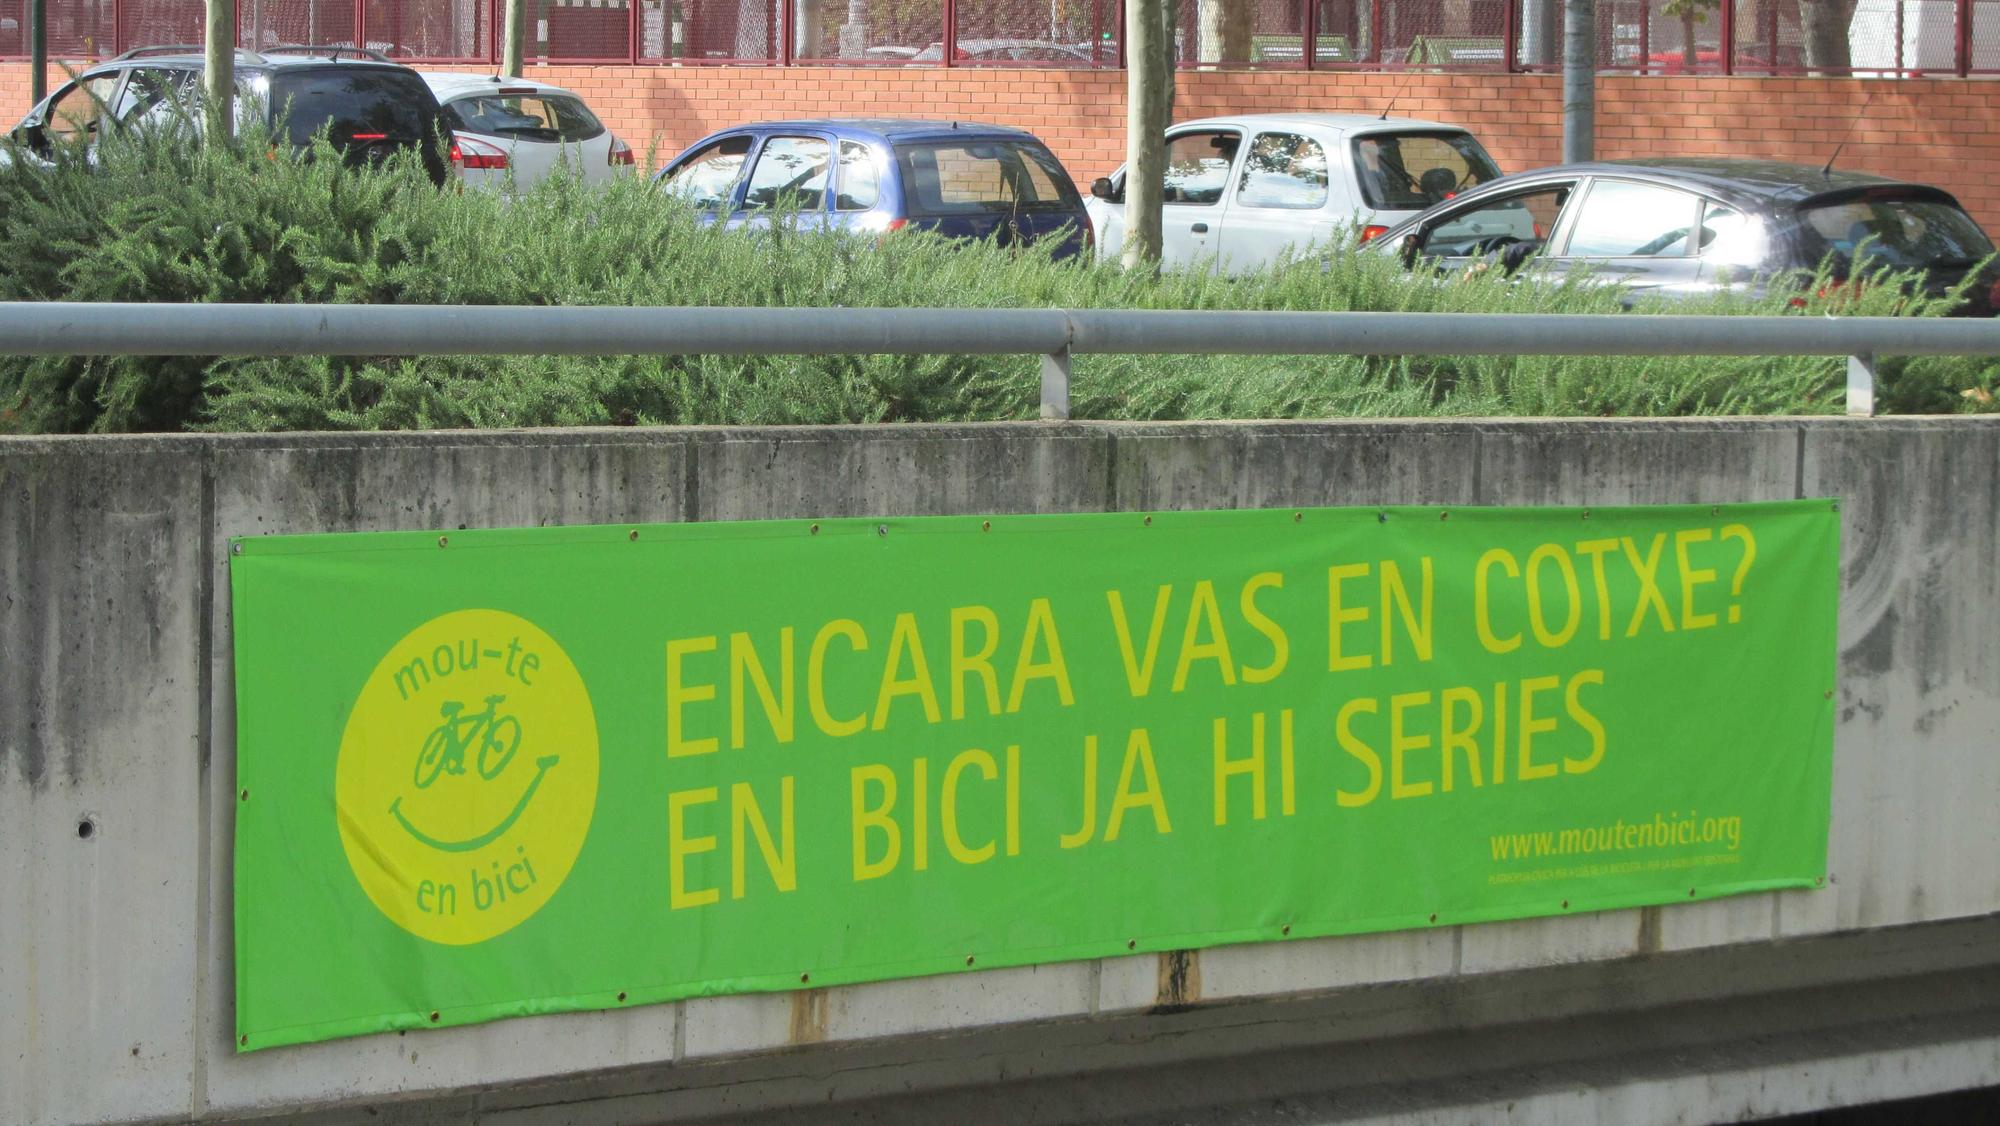 Pancarta de l'associaciño fomentant l'ús de la bici